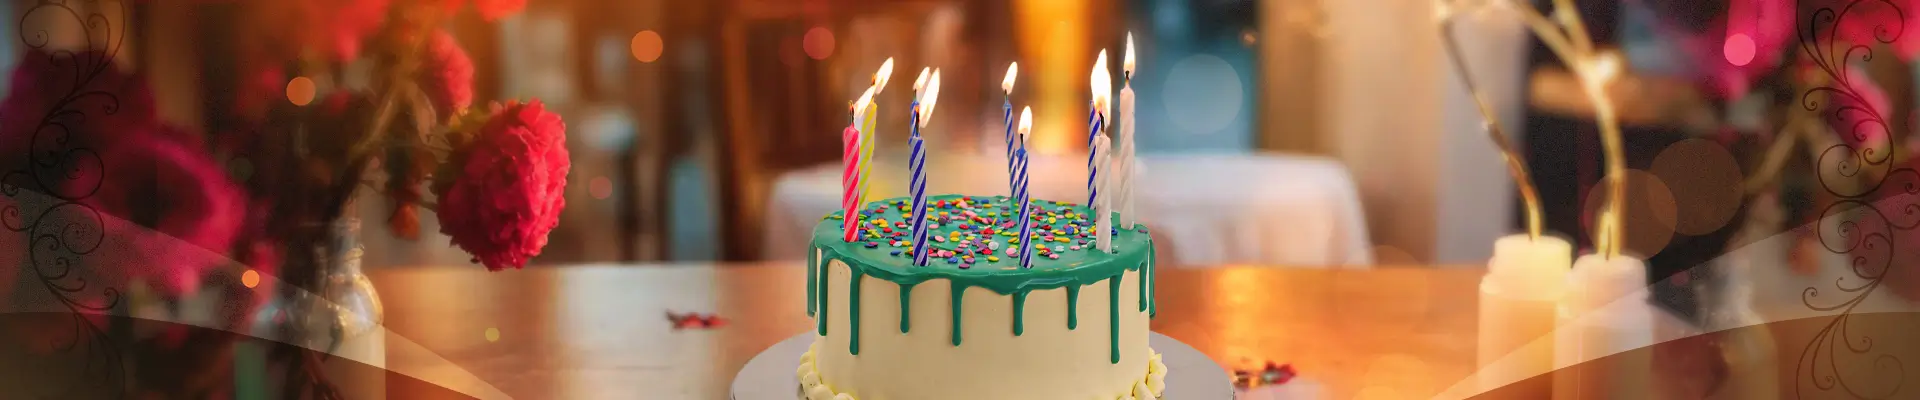 Magenta Birthday Cake